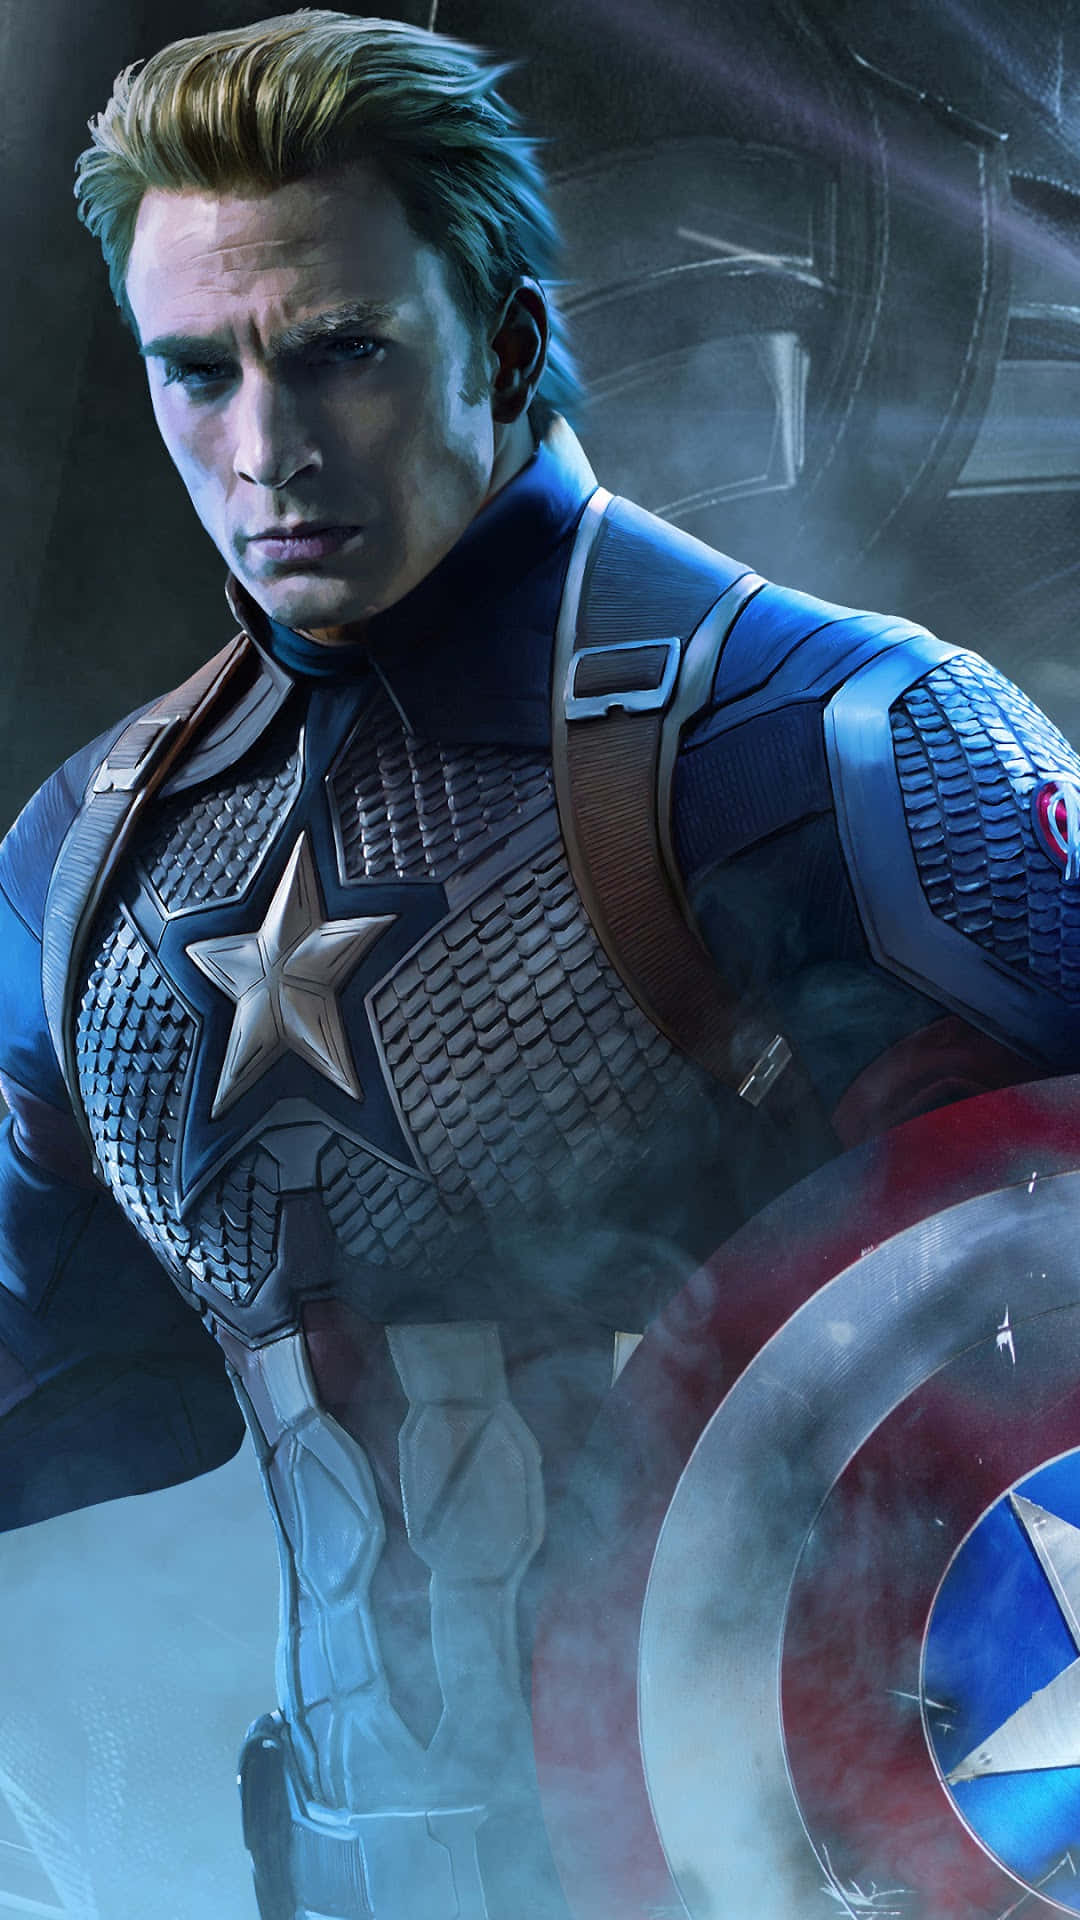 Den heldige Captain America står parat til at bekæmpe de onde kræfters kræfter.